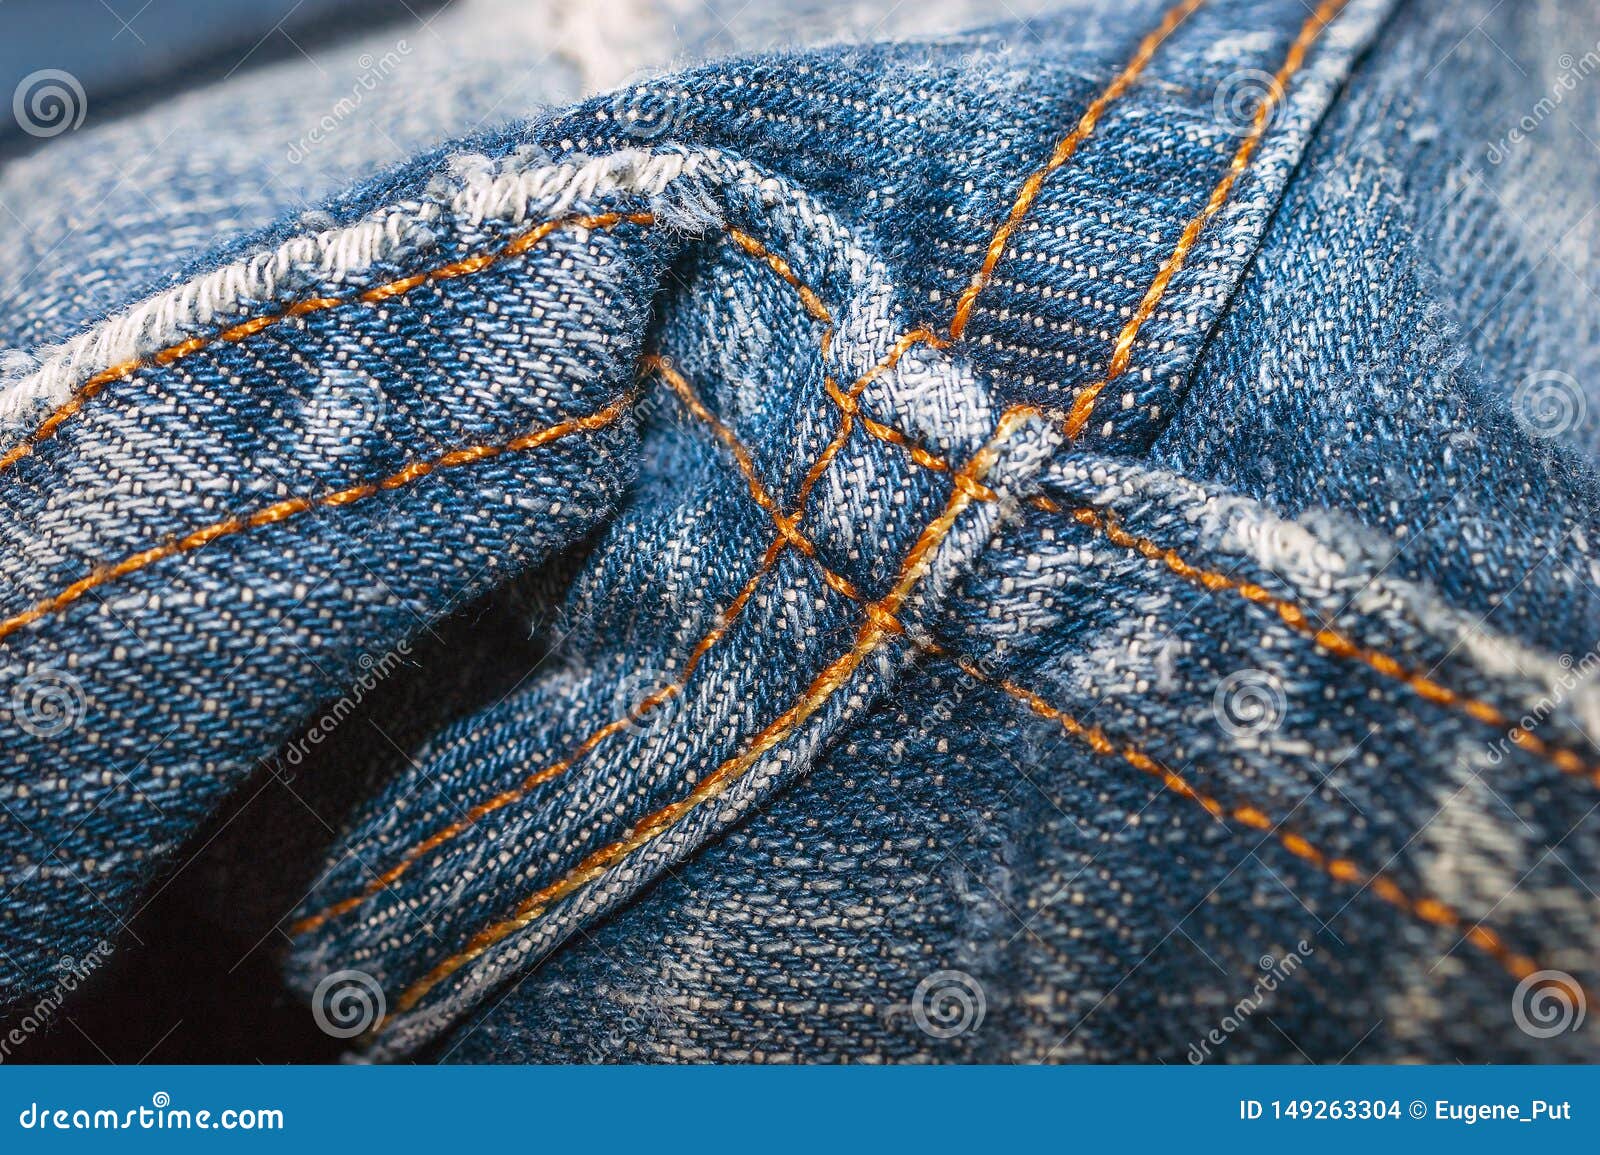 Крупный план швов пункта Crotch джинсов джинсовой ткани сшитых двойником Деталь джинсовой ткани шить